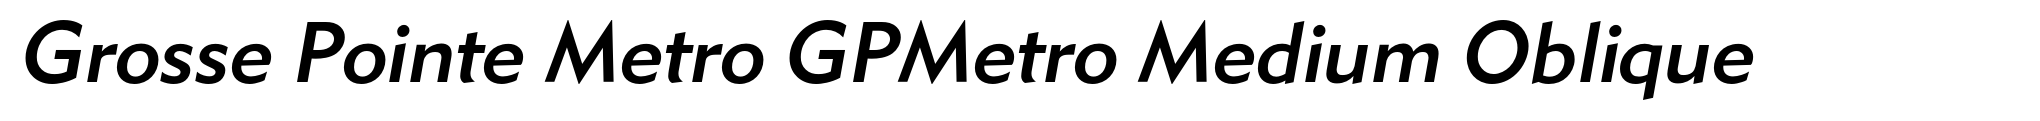 Grosse Pointe Metro GPMetro Medium Oblique image